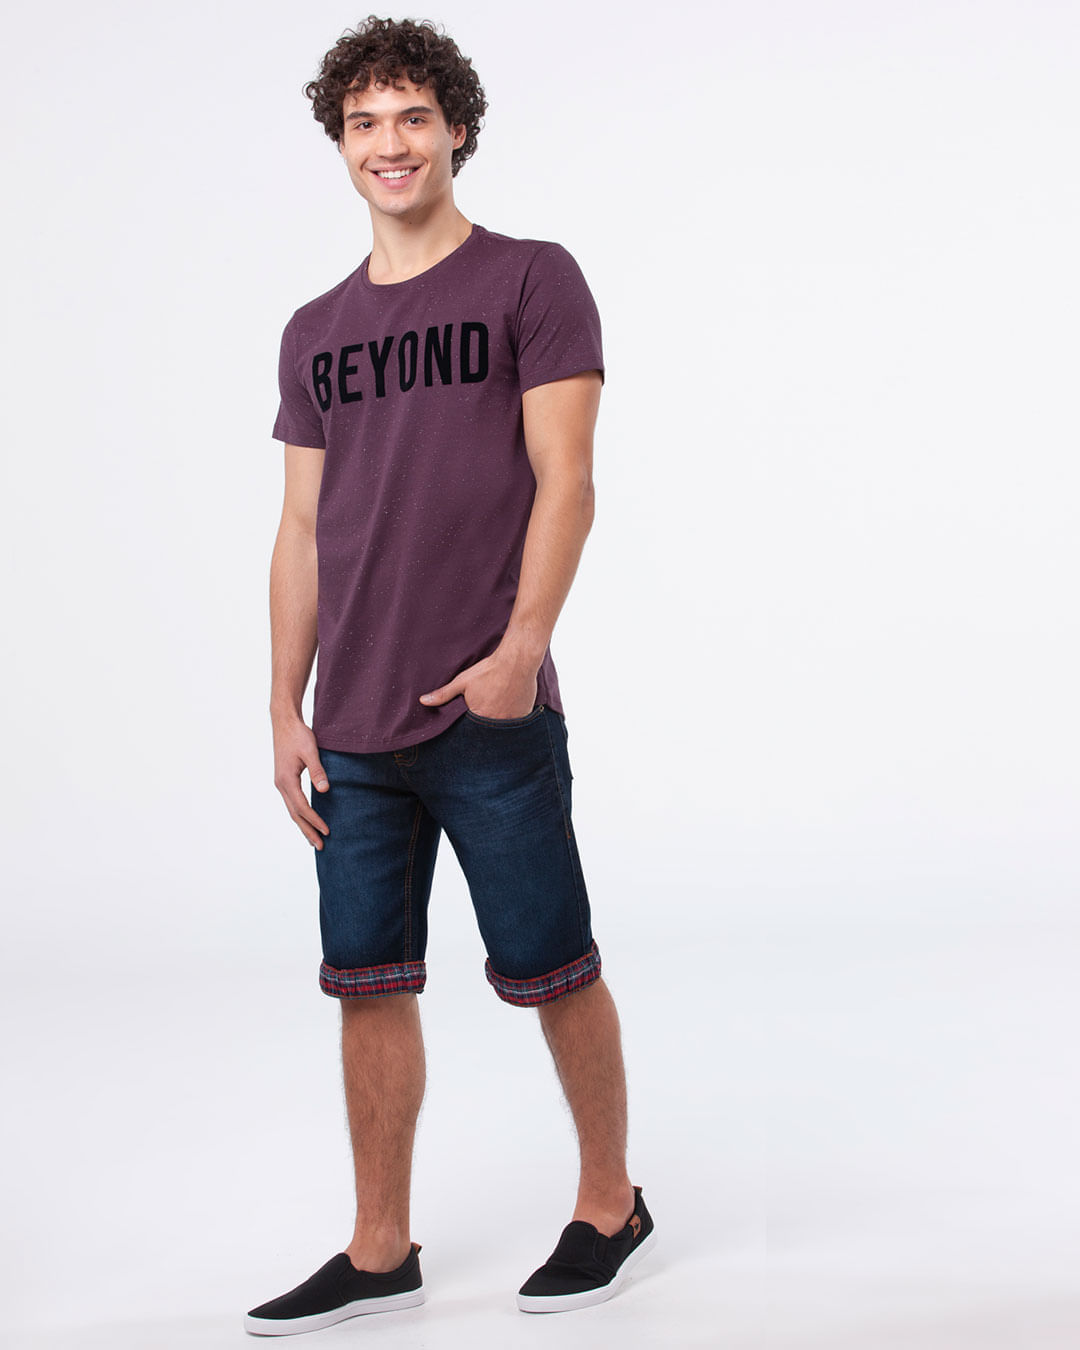 Camiseta-Masculina-Regular-Estampa-Beyond-Vinho